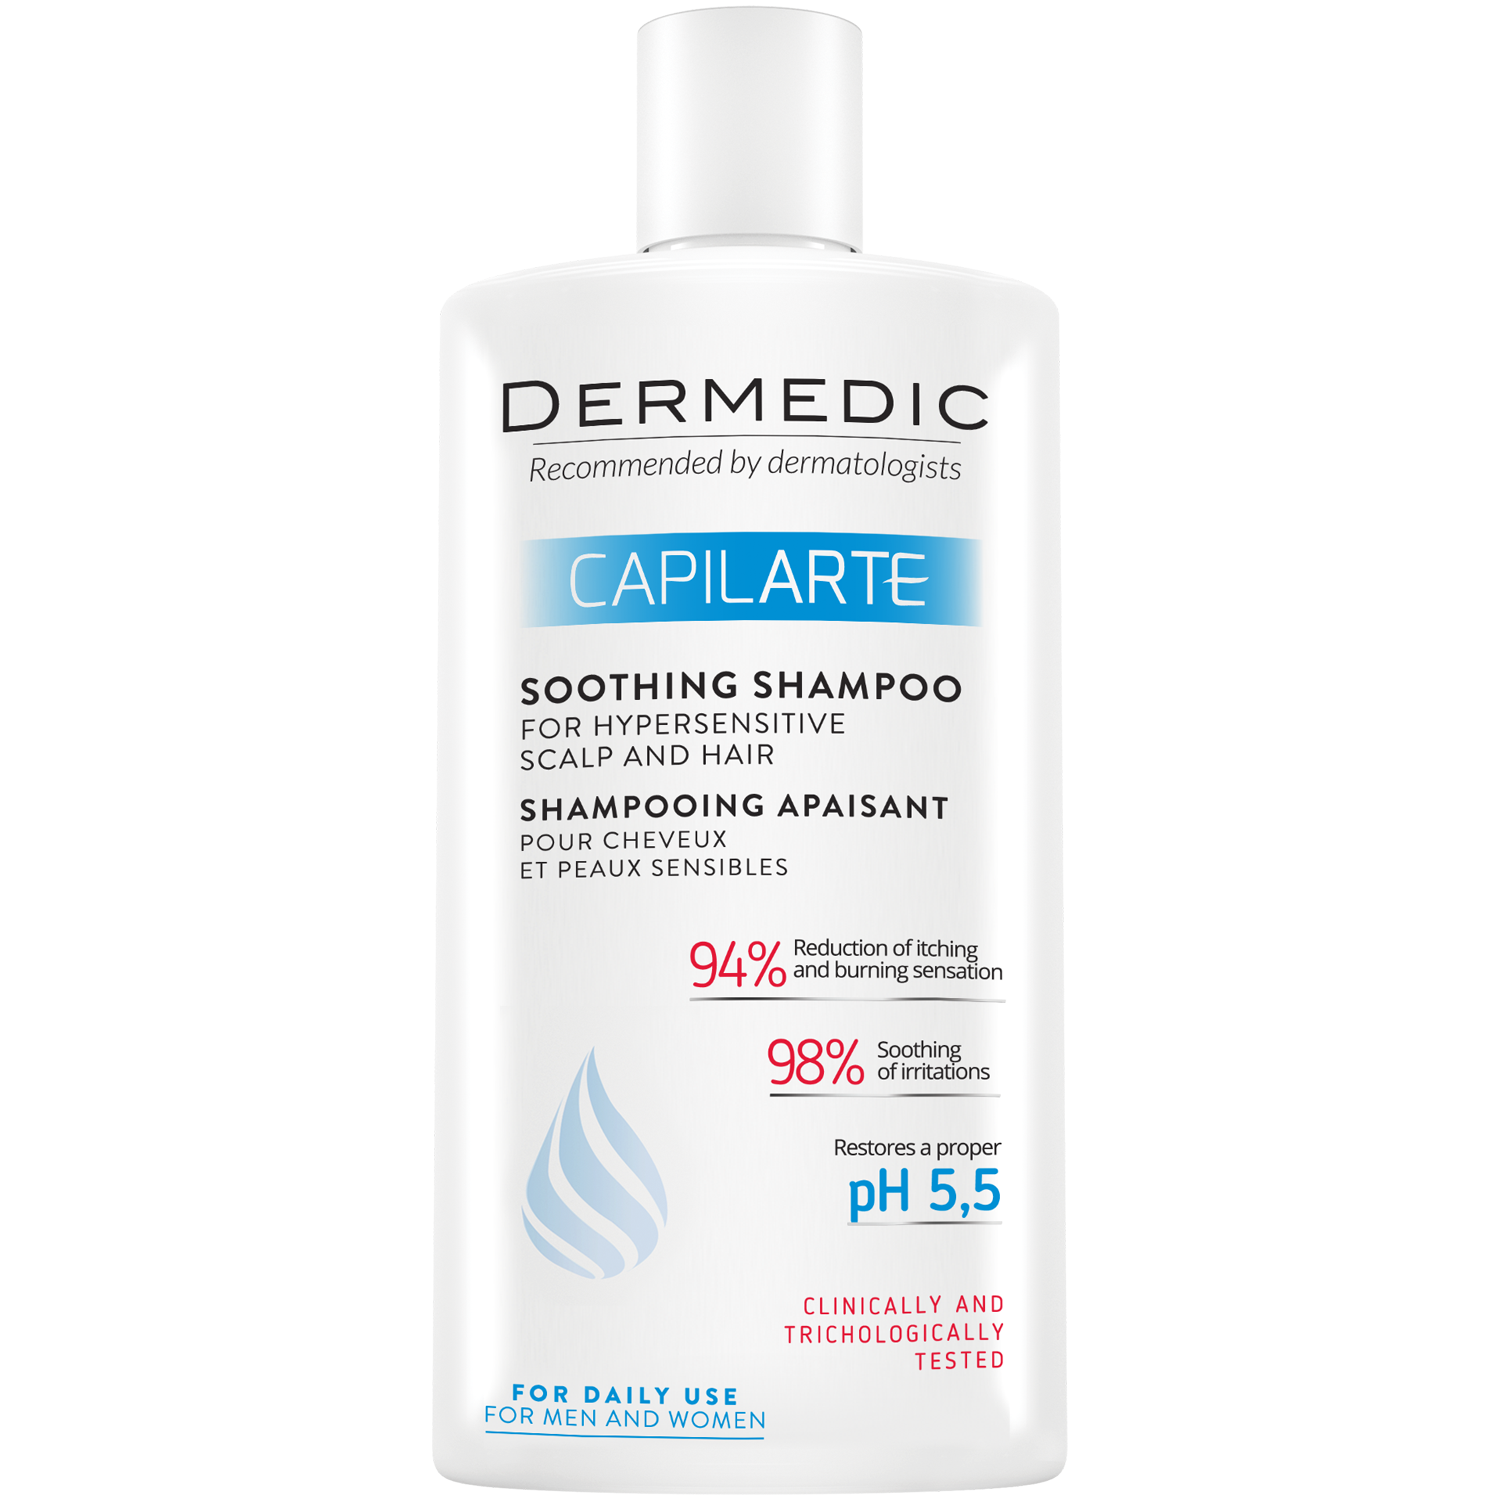 Dermedic Capilarte успокаивающий шампунь для гиперчувствительной кожи, 300 мл дермедик капиларте успокаивающий шампунь для волос и чувствительной кожи головы 300 мл dermedic dermedic capilarte soothing shampoo for sensitive and irritated scalp 300 мл